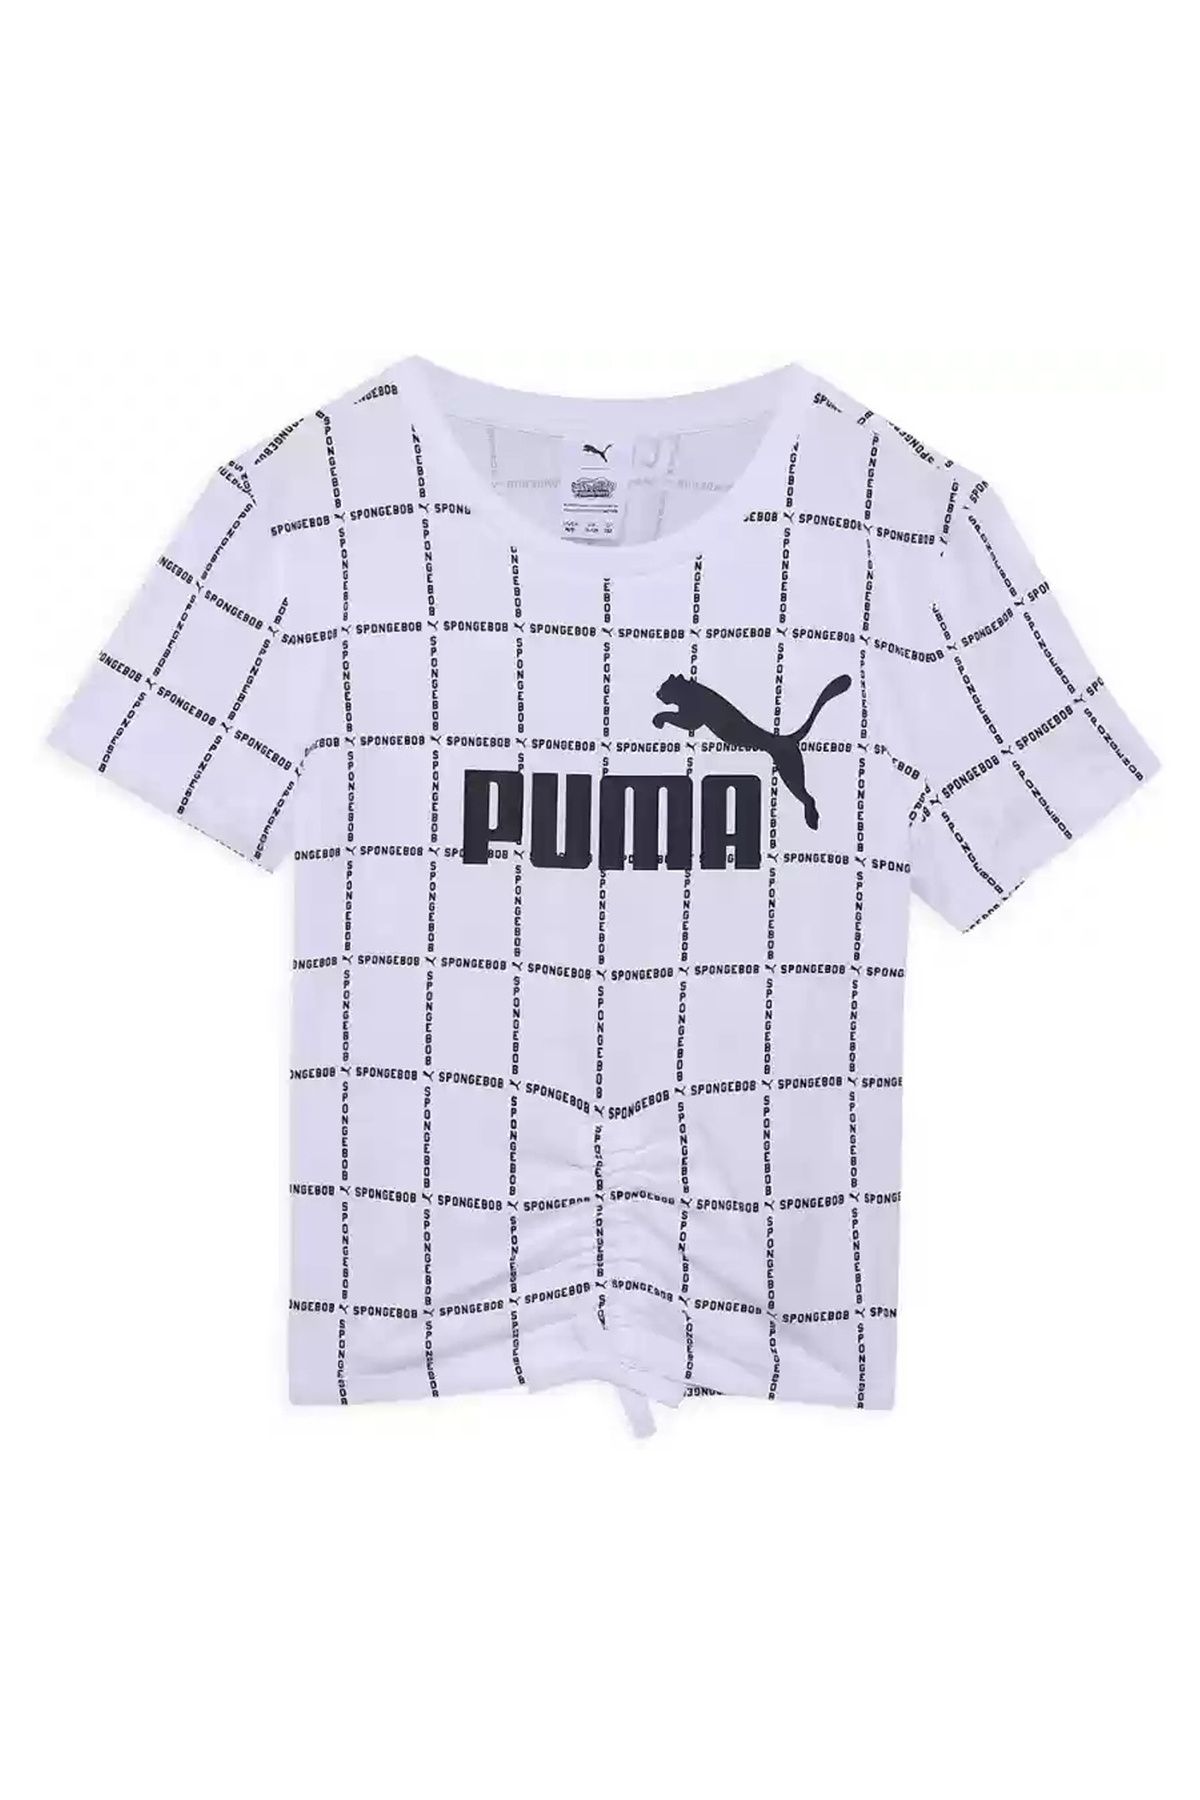 Puma Düz Beyaz Kız Çocuk T-Shirt 67758602 PUMA X SPONGEBOB AOP Tee